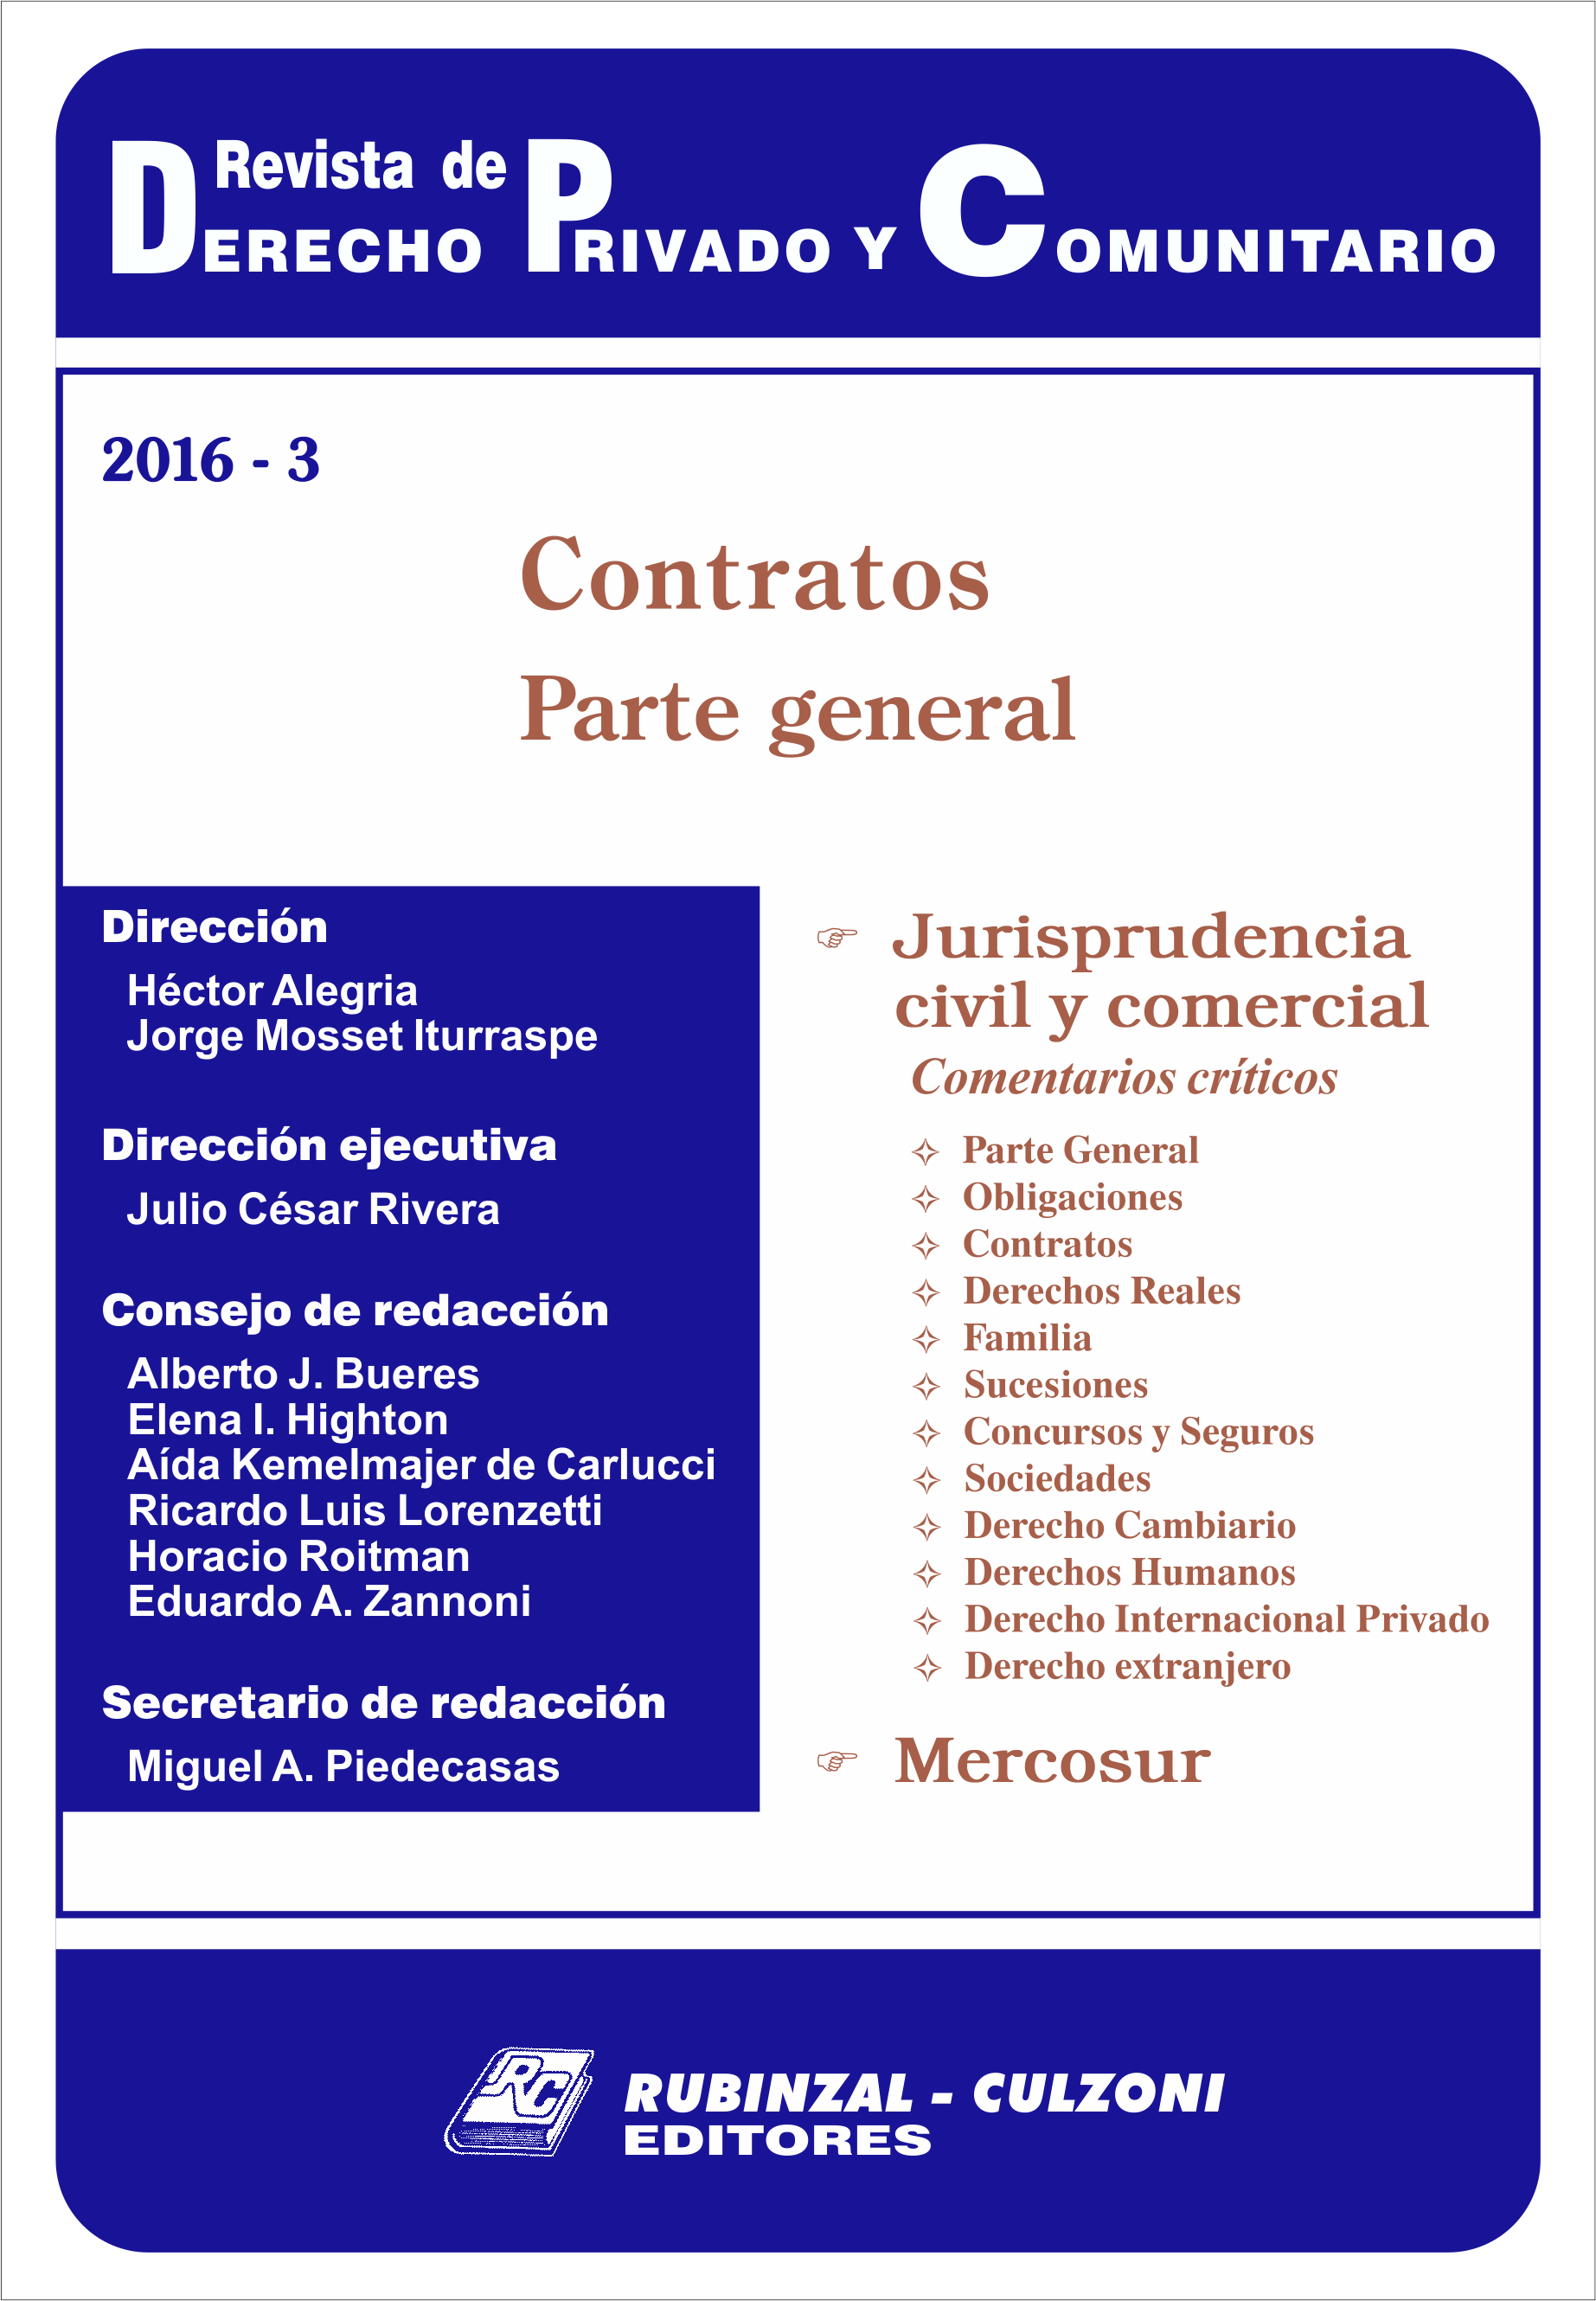 Revista de Derecho Privado y Comunitario - Contratos